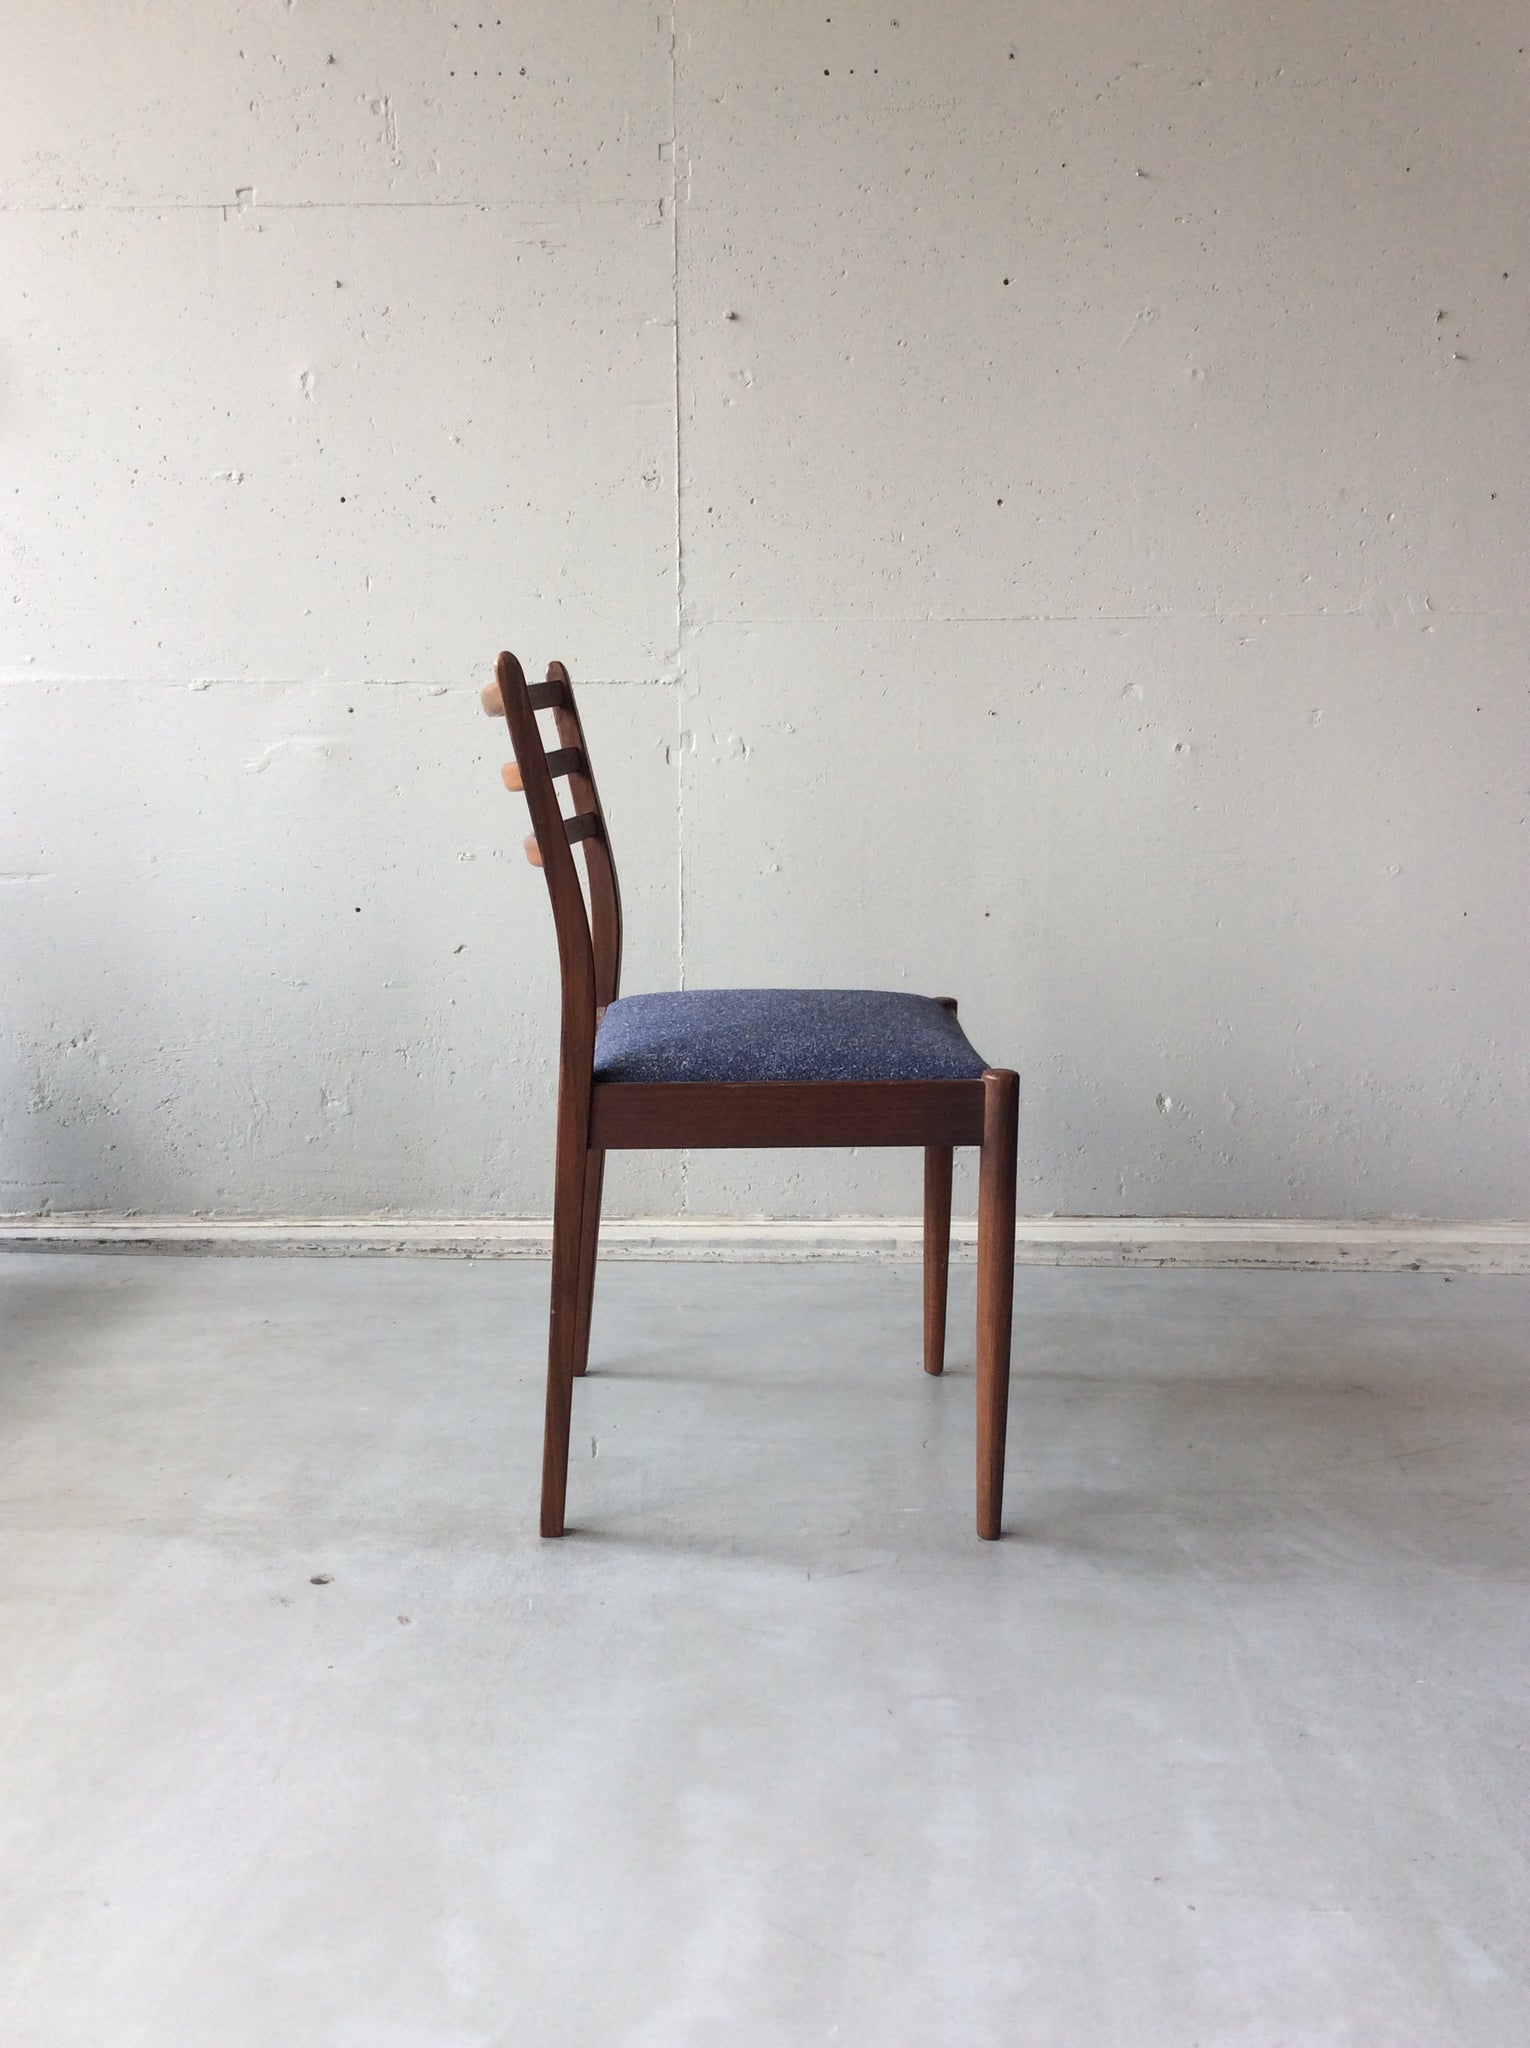 ジープラン チェア４脚セット / g-plan chairs set of 4 #0060